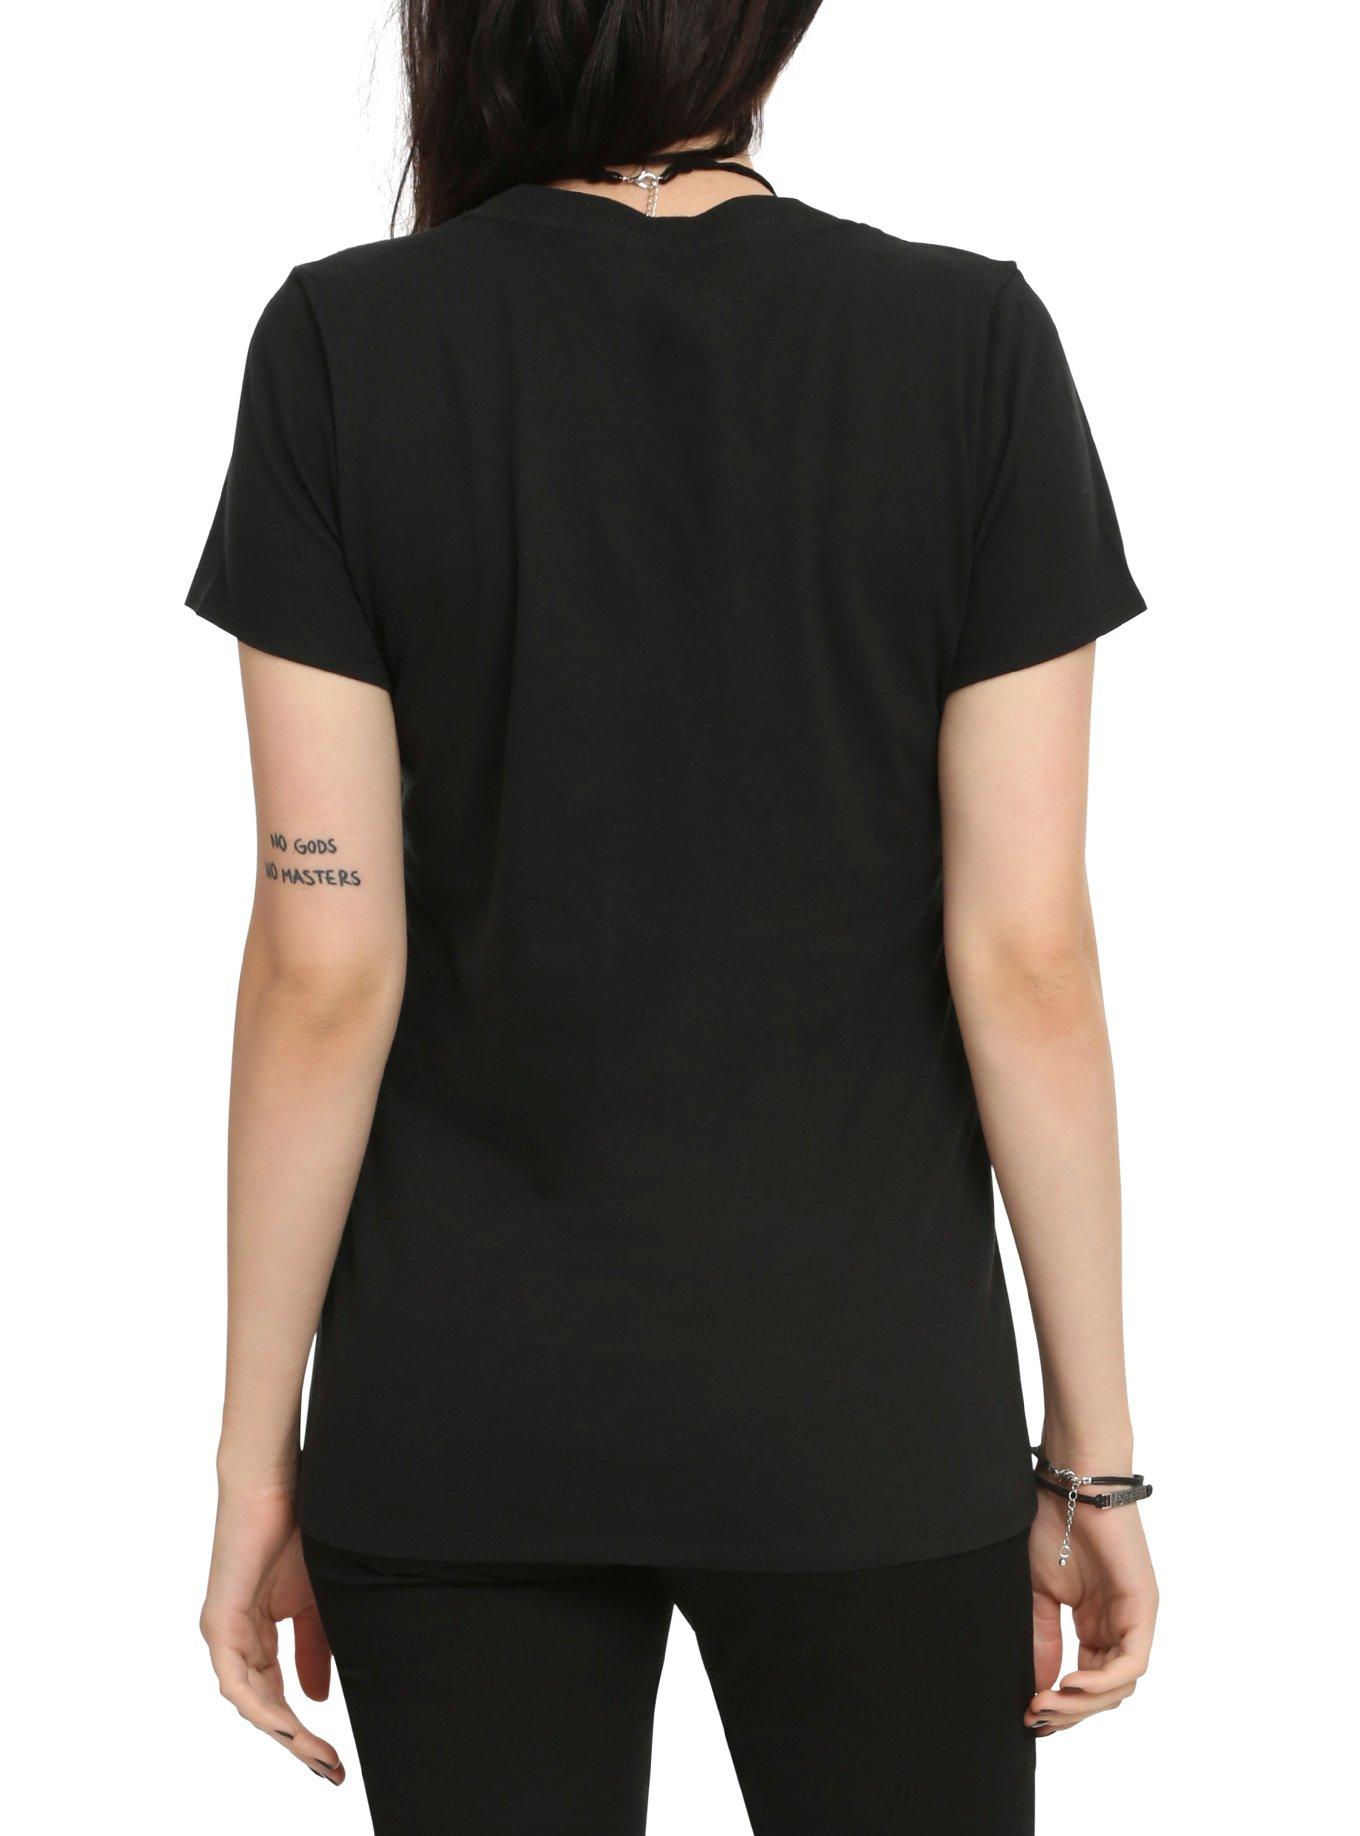 Skelanimals Bonita Love You Forever Girls V-Neck T-Shirt, BLACK, alternate